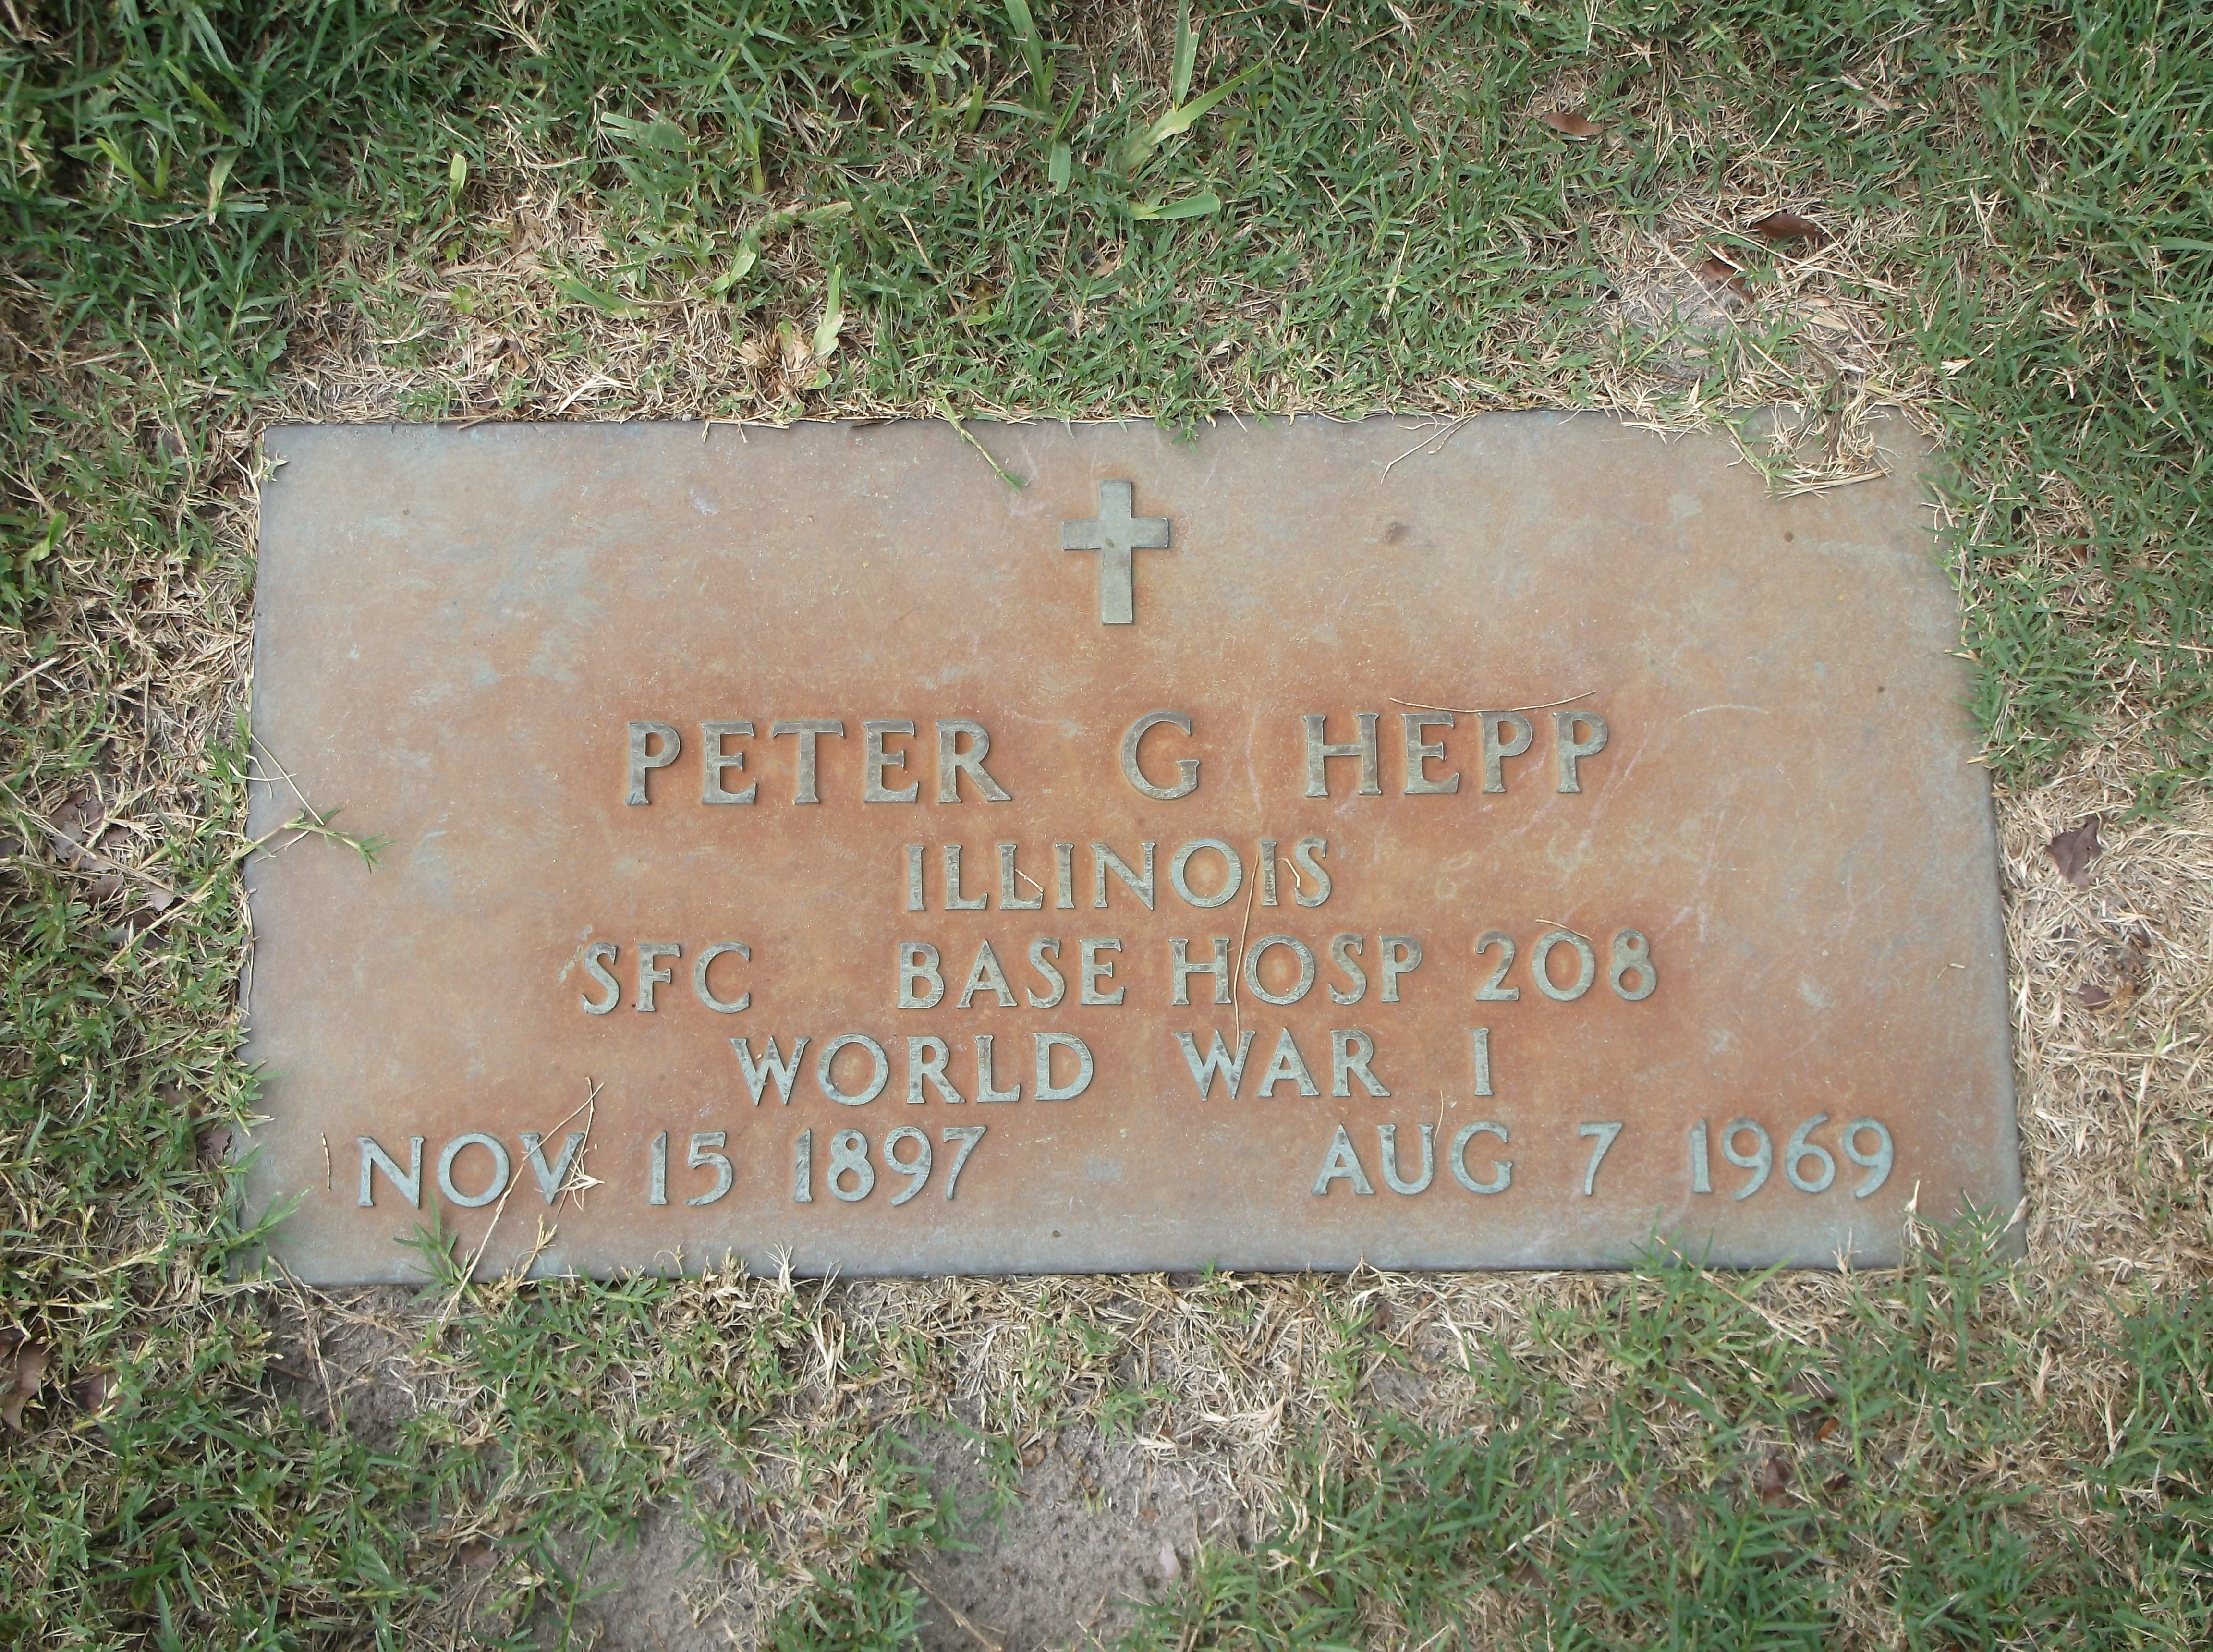 Peter G Hepp